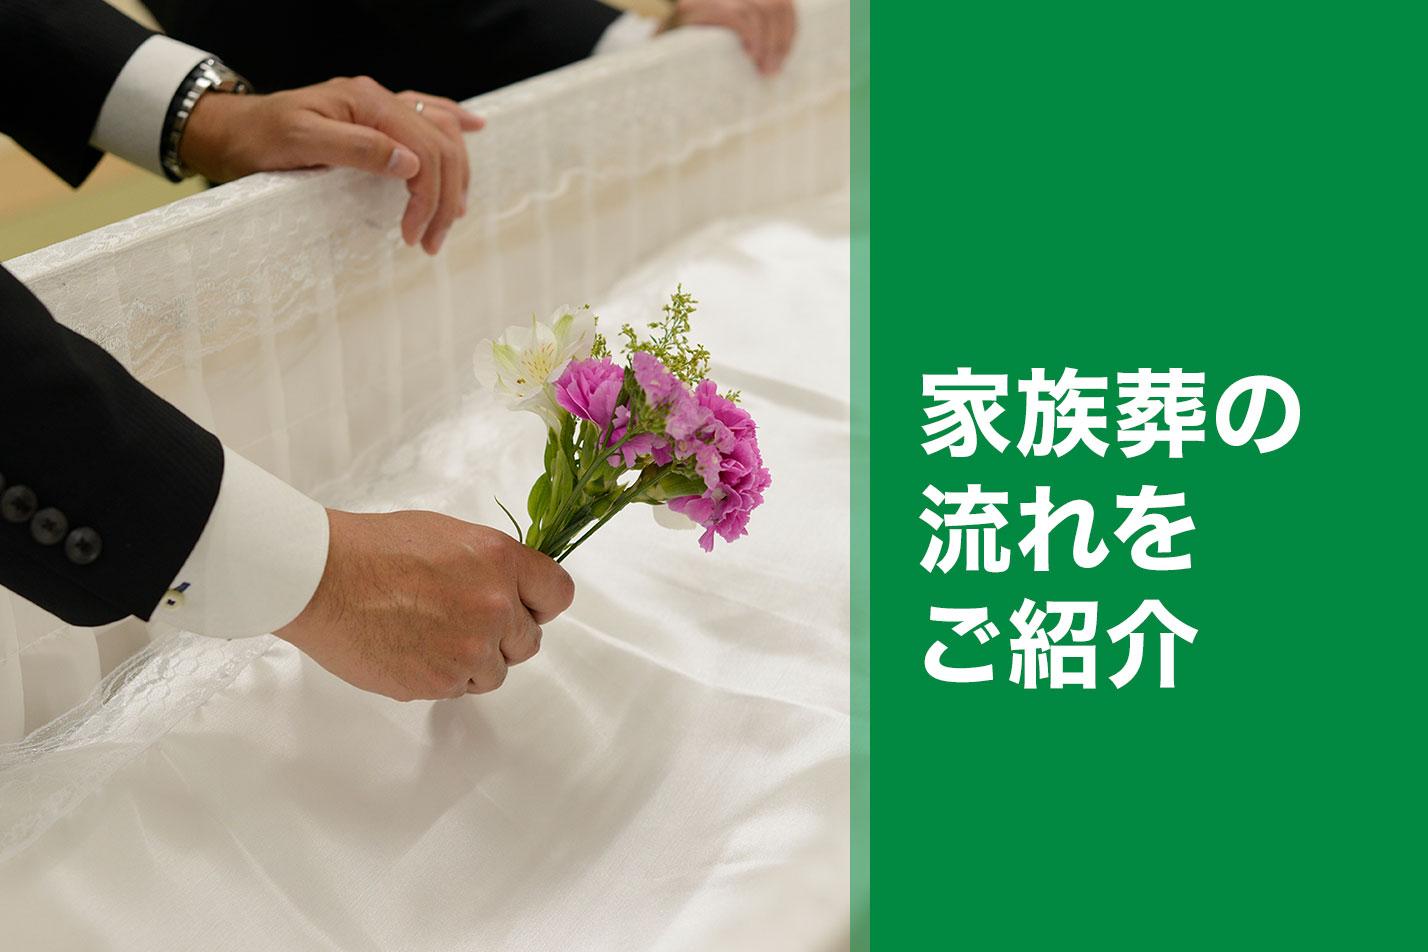 袋井市における家族葬の流れとは？のイメージ画像